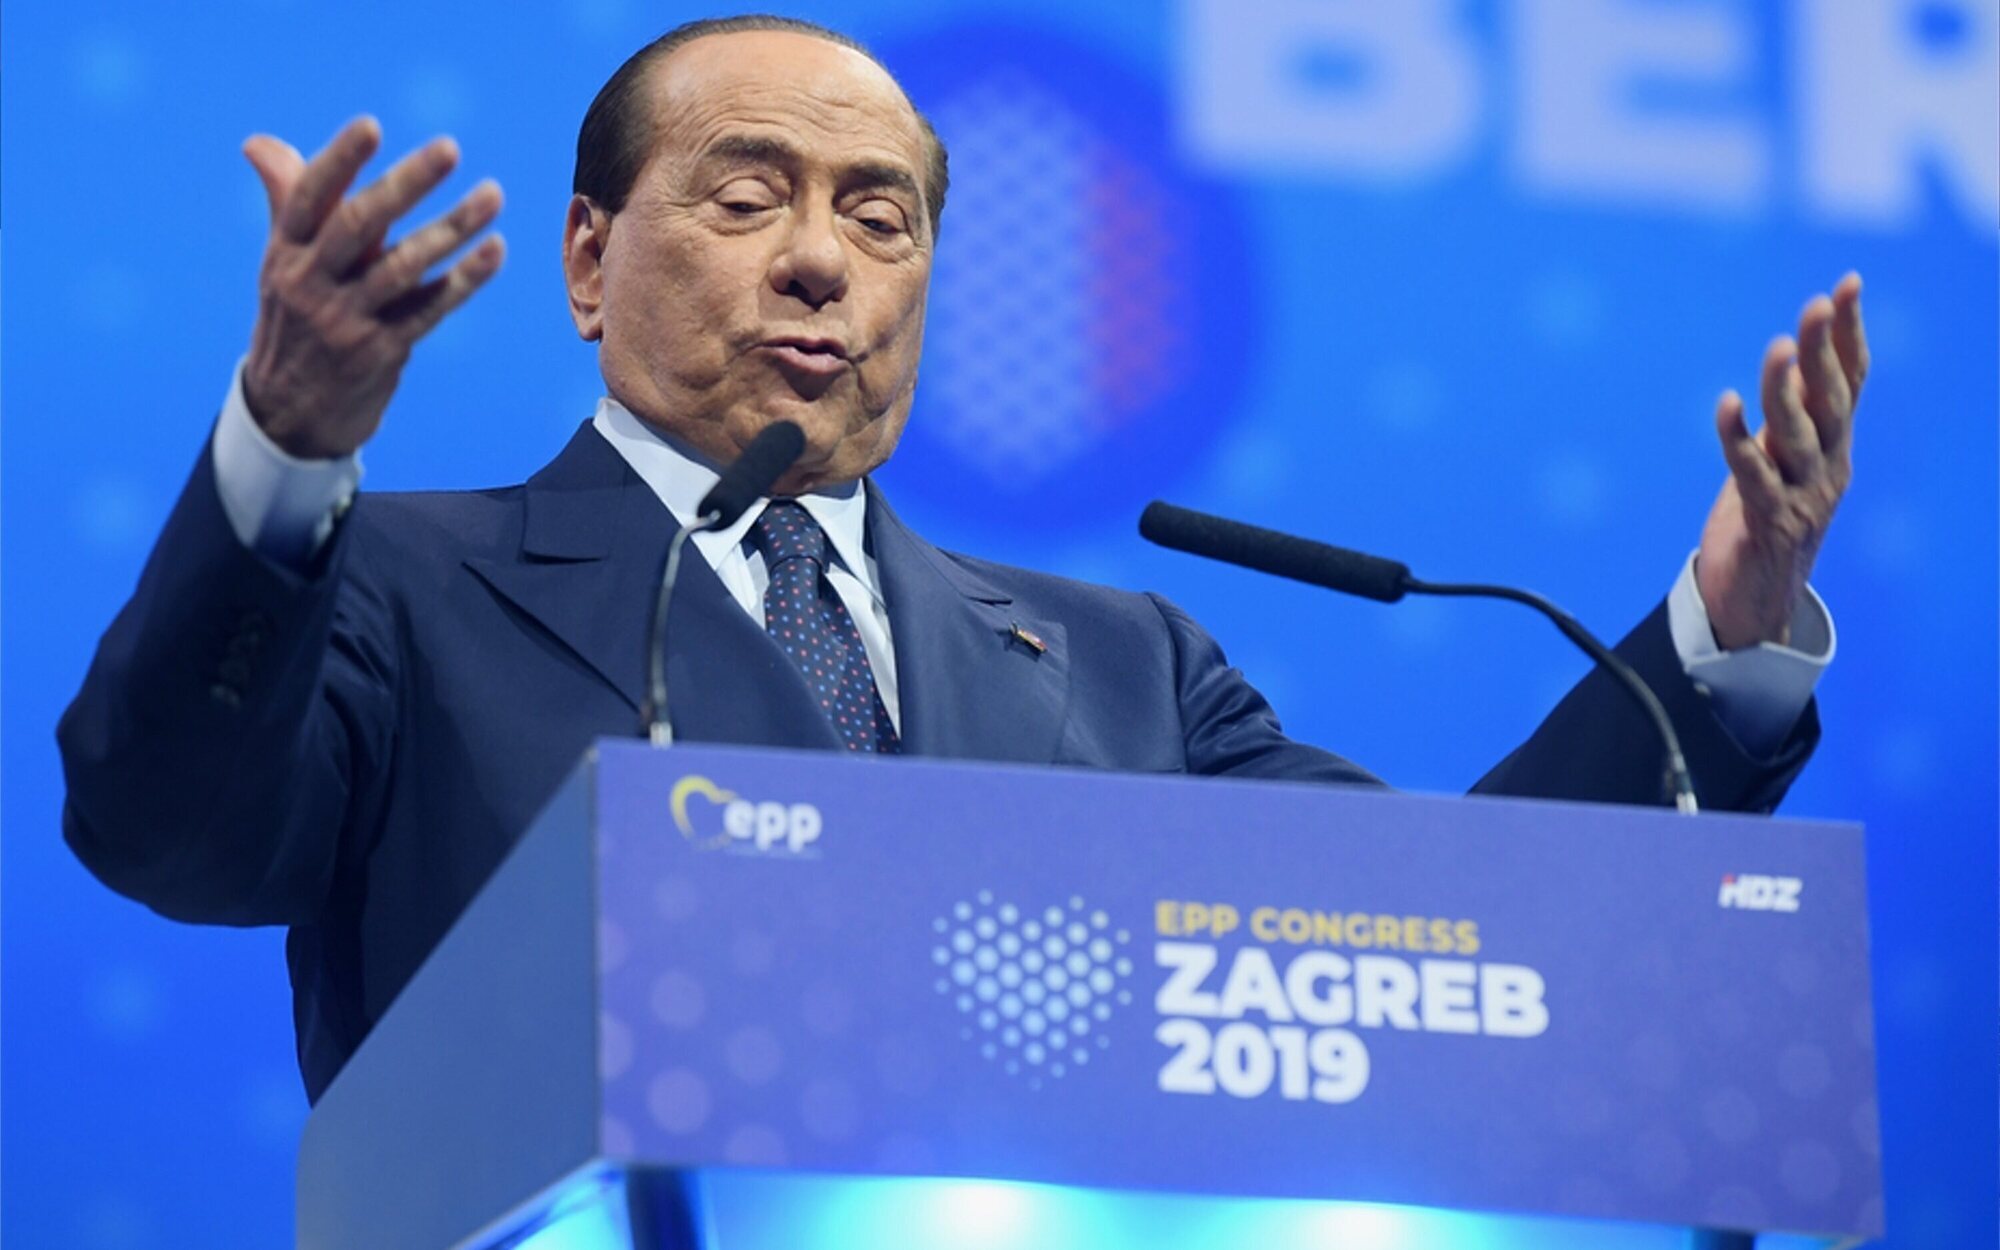 El deplorable discurso de Silvio Berlusconi: Promete un "bus de prostitutas" si el Monza gana a un club grande